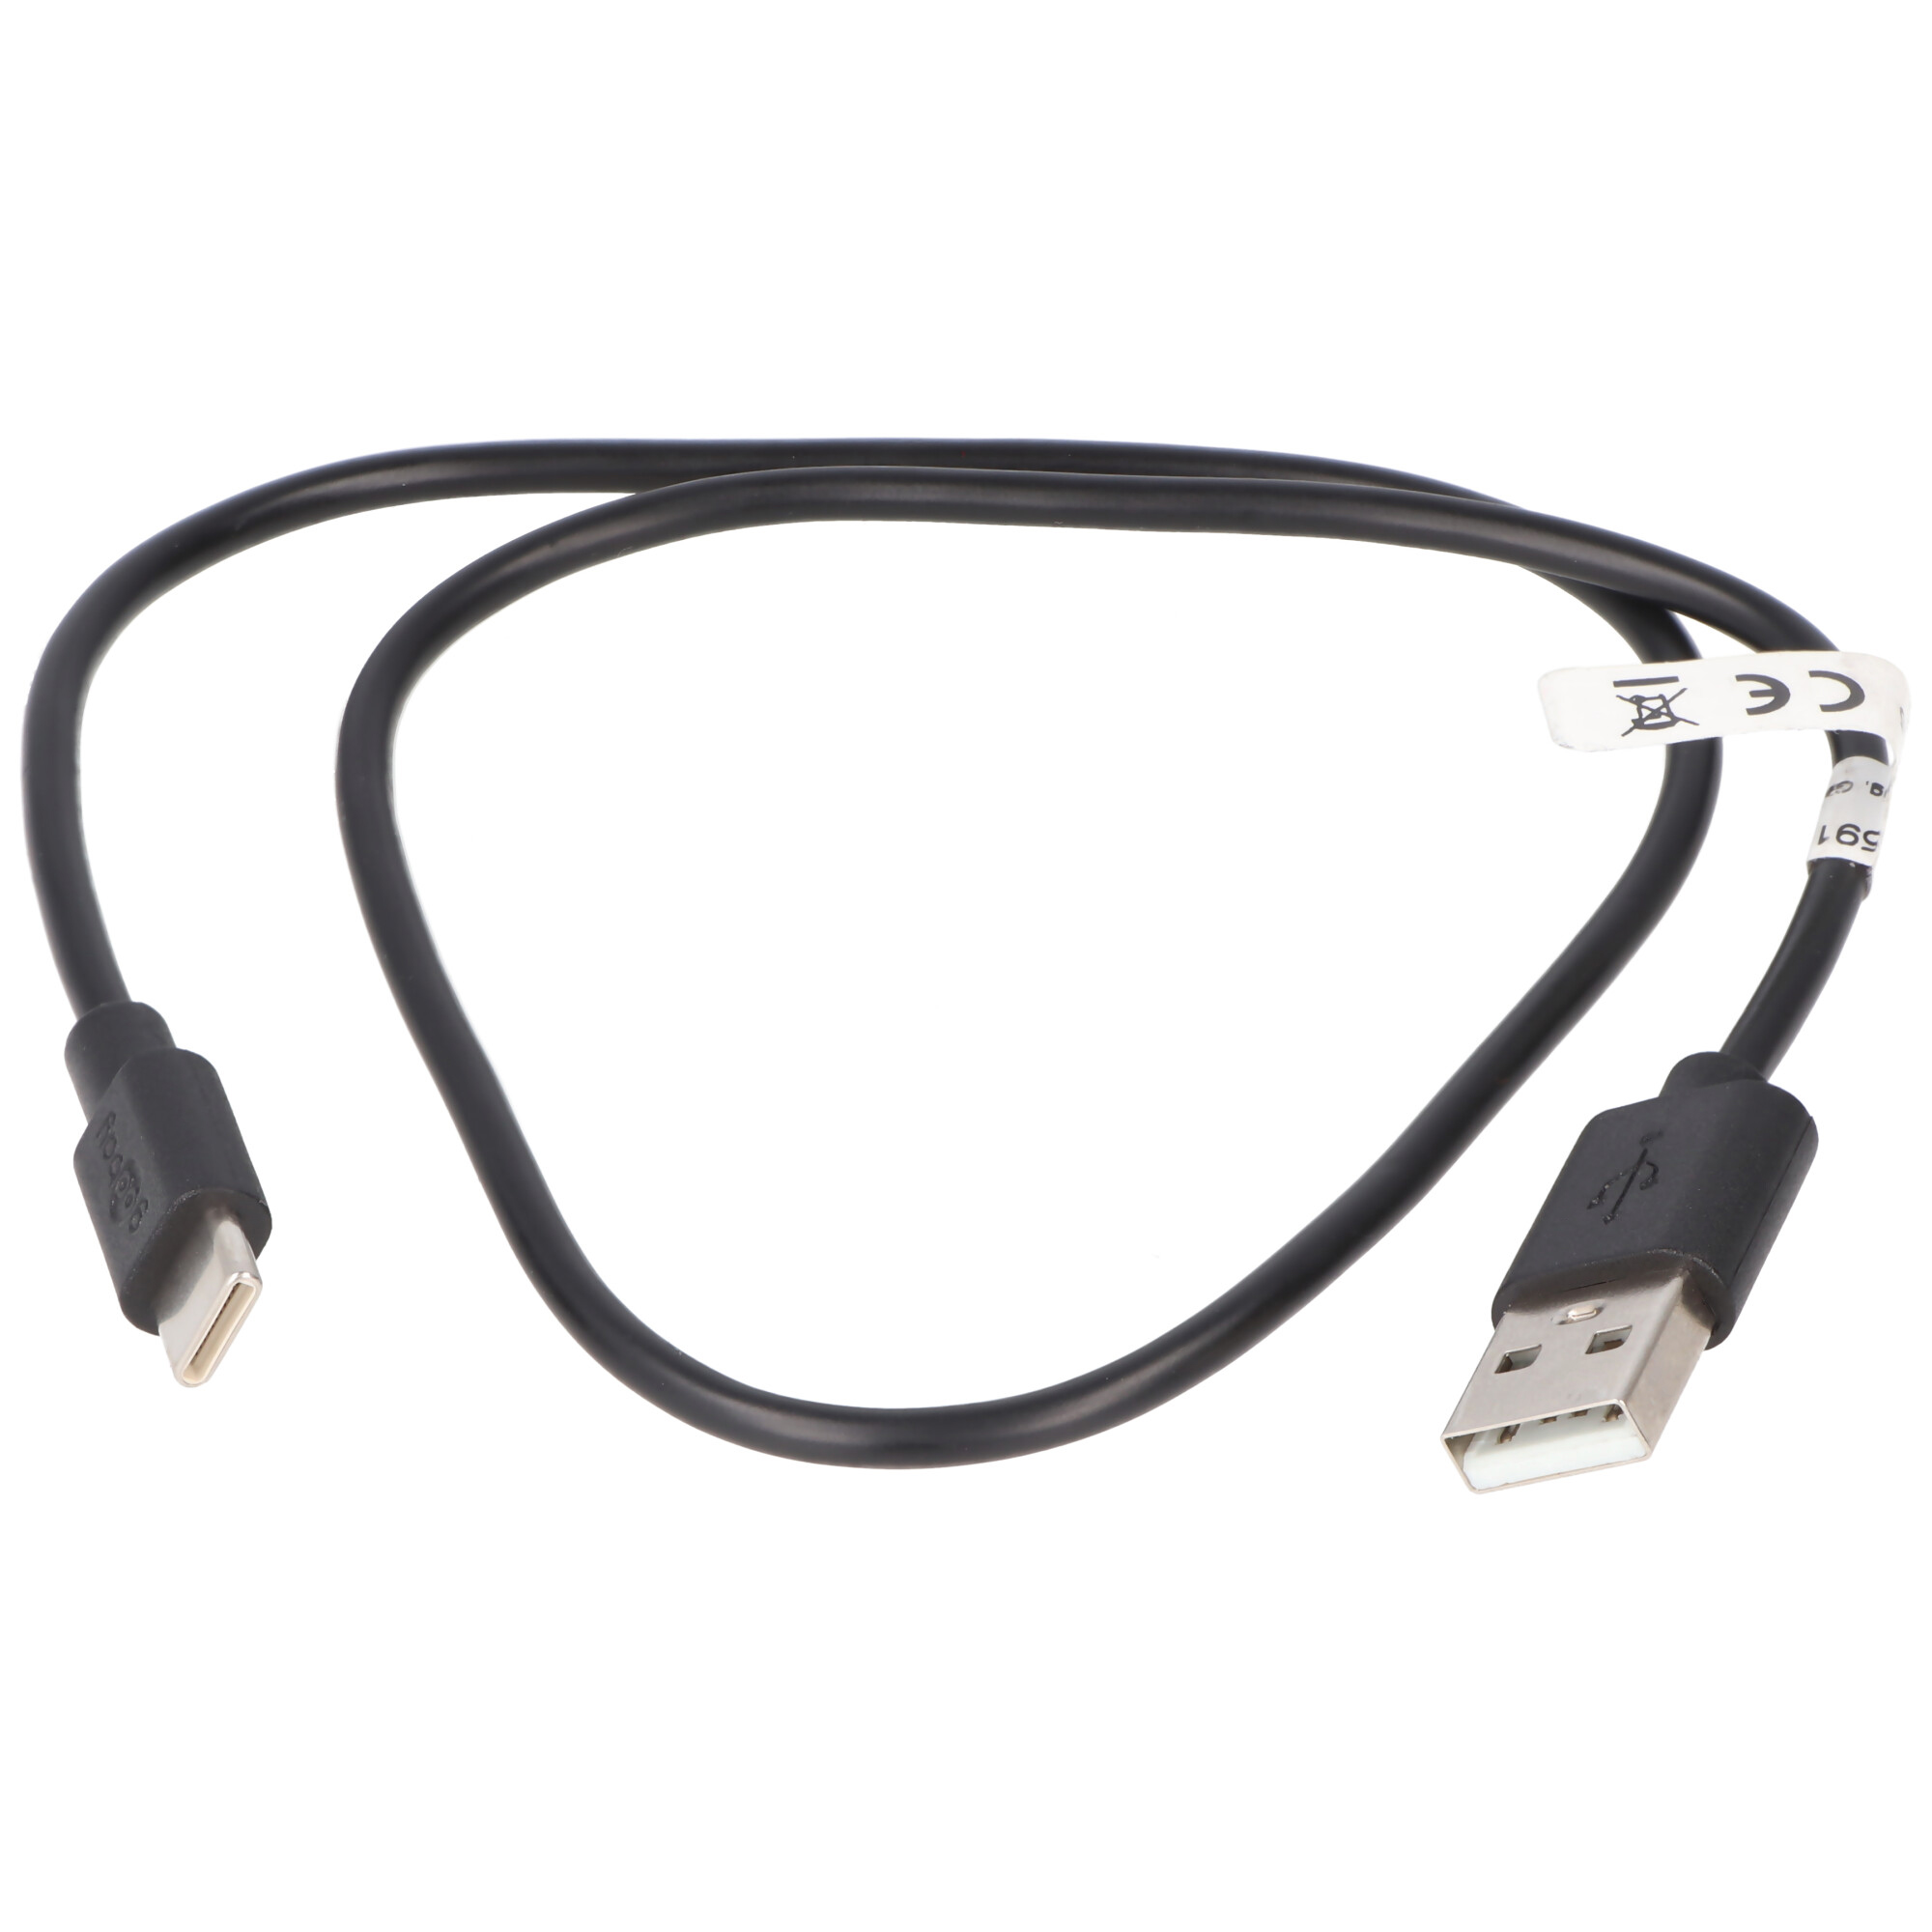 USB-C Lade- und Synchronisationskabel für alle Geräte mit USB-C Anschluss, 0,5 Meter Schwarz